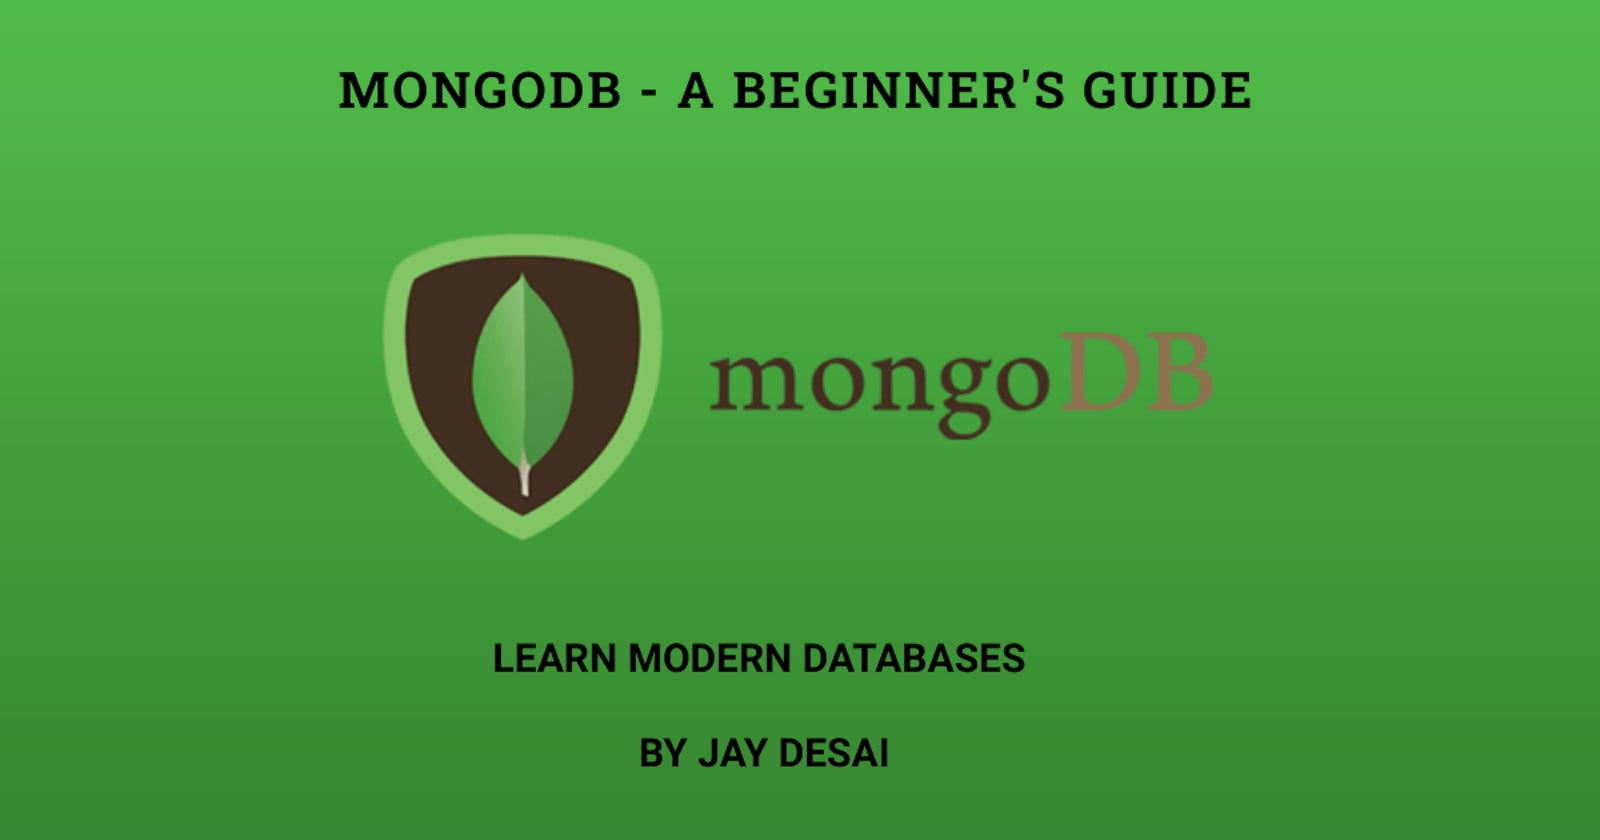 MongoDB - A Beginner's Guide